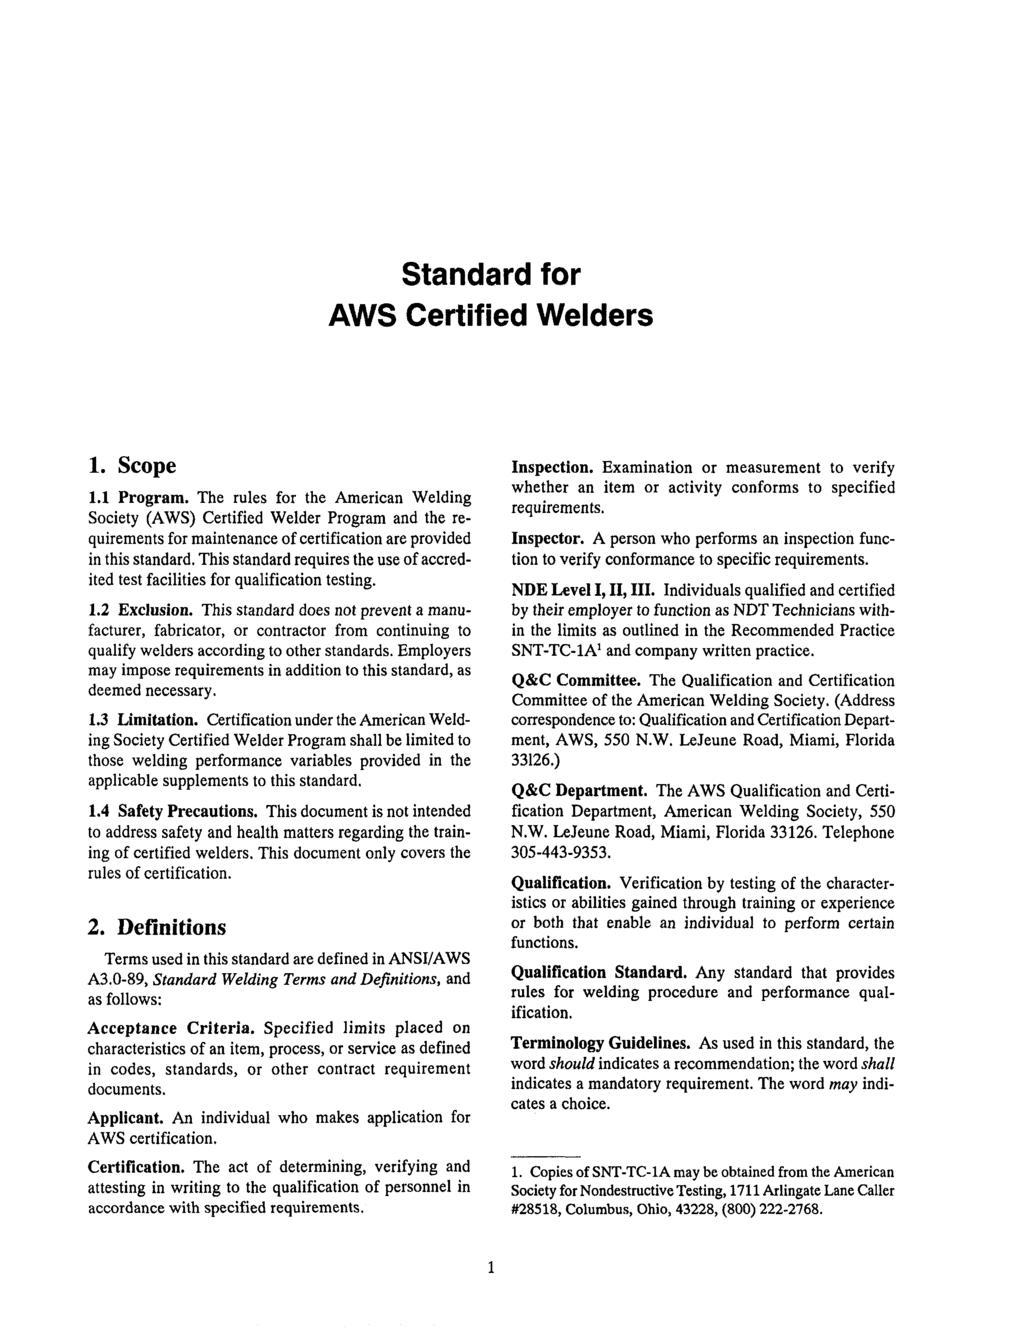 Standard for AWS Certified Welders 1. Scope 1.1 Program.